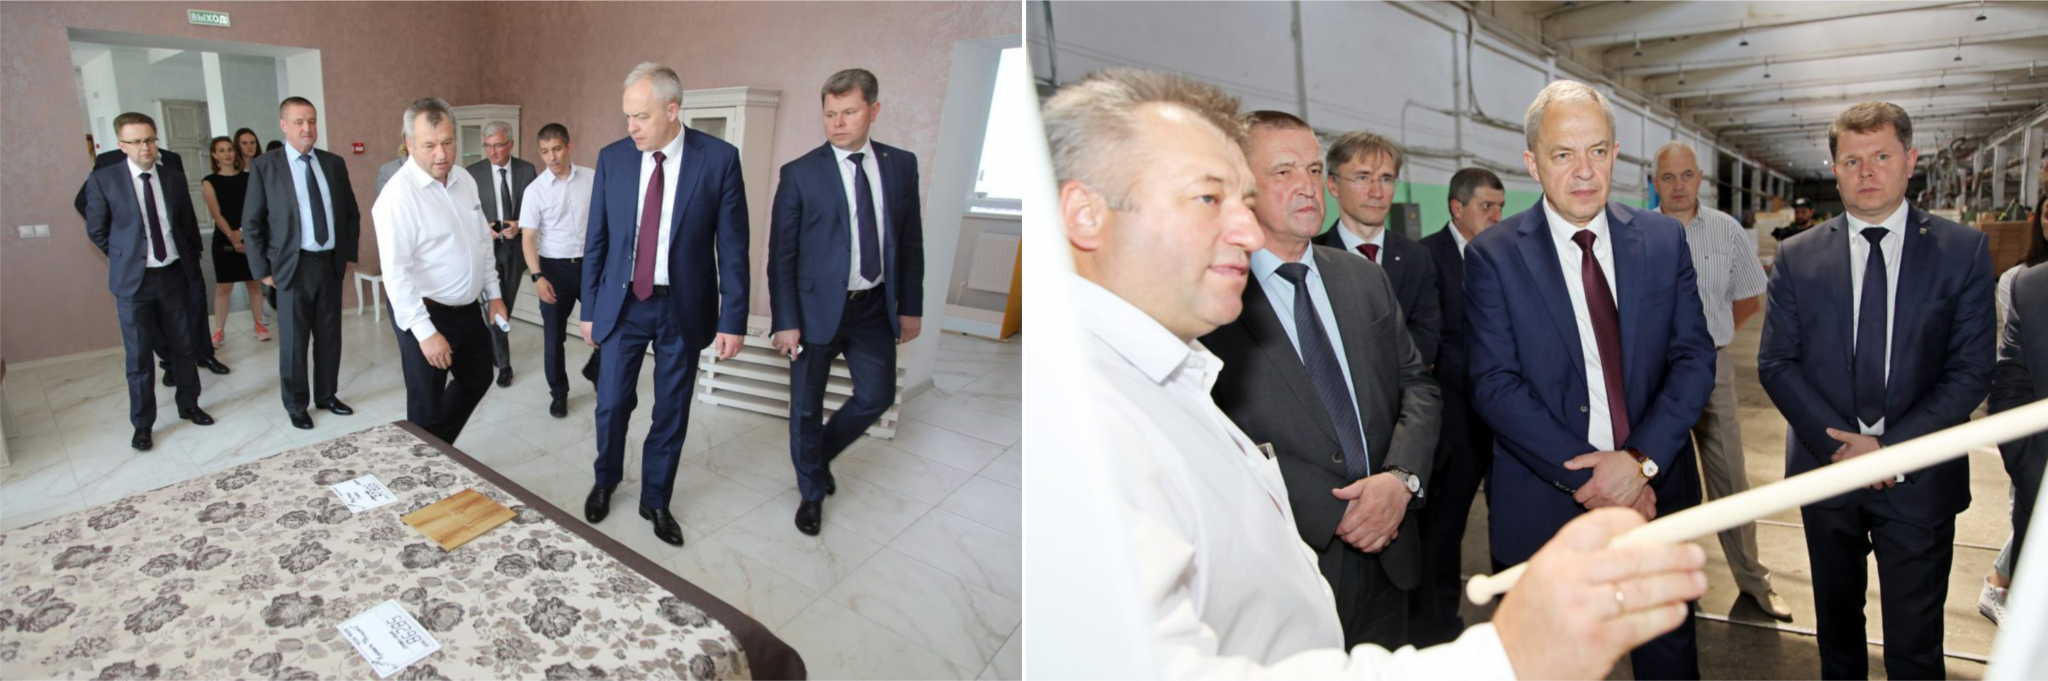 Деловой визит главы Администрации Президента на ОАО «ФанДОК»_1.2.png